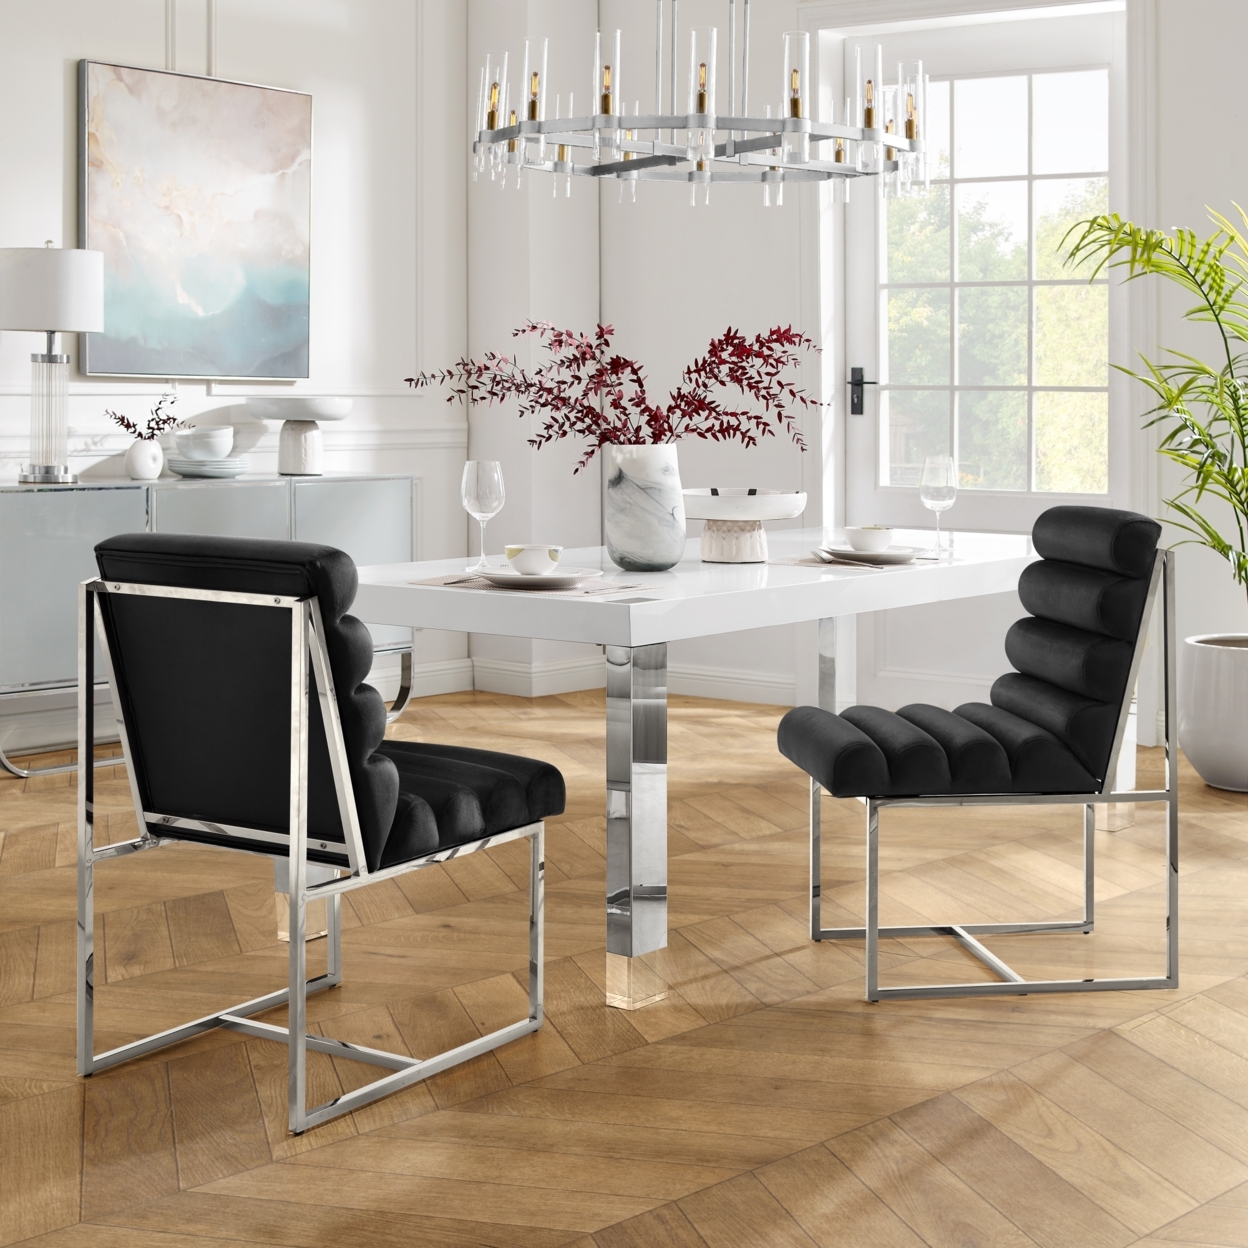 Madelyne Dining Chair - Upholstered, Stainless Steel Frame, Channel Tufted, Armless - Velvet Black/chrome